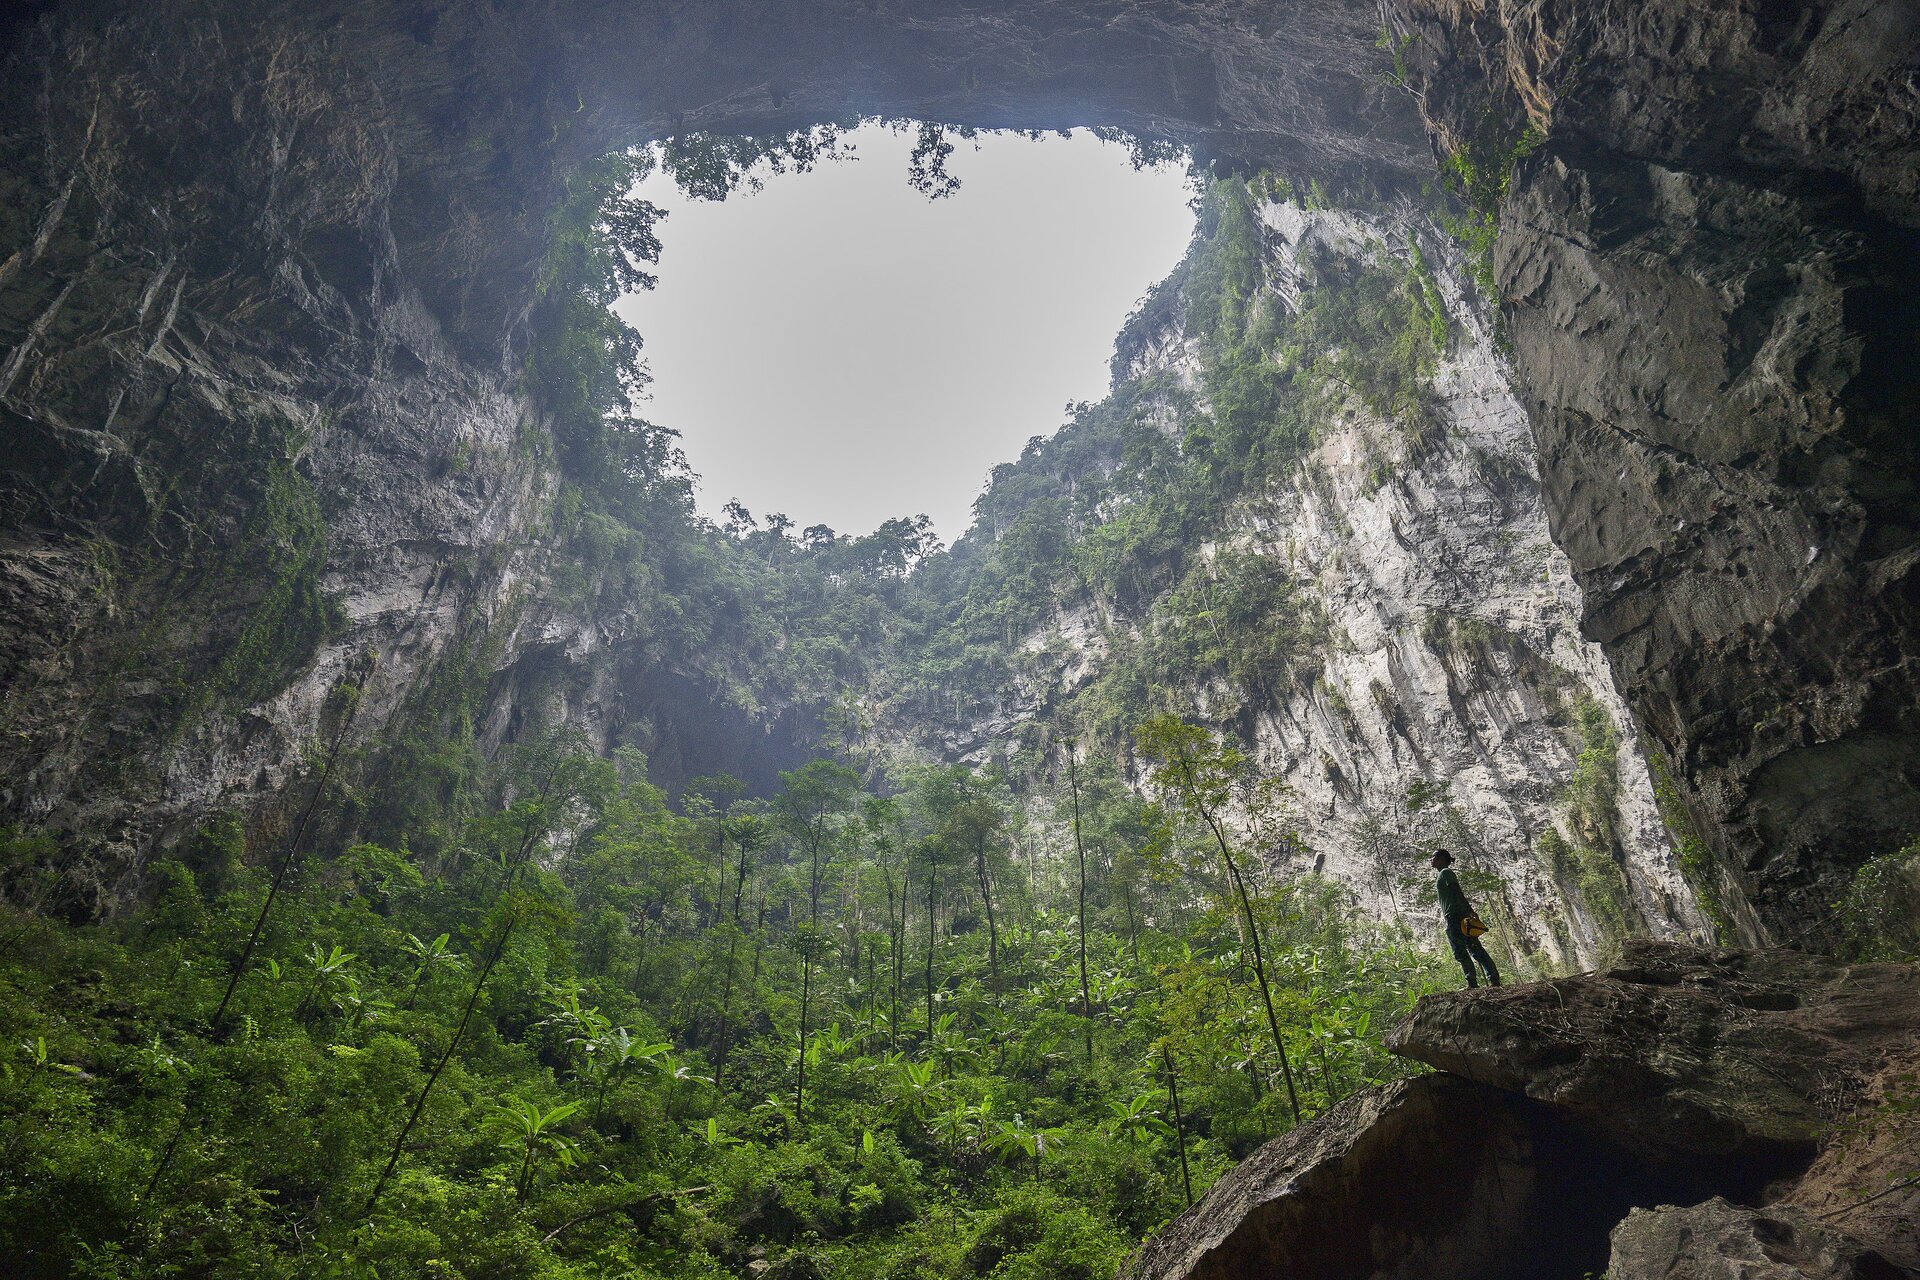 Zdjęcie przedstawia wnętrze jaskini z wielkim, okrągłym wlotem od góry jaskini, przez który widać błękitne niebo. We wnętrzu jaskini rośnie gęsta roślinność. Na kawałku skały z prawej strony stoi postać ludzka i patrzy w górę.